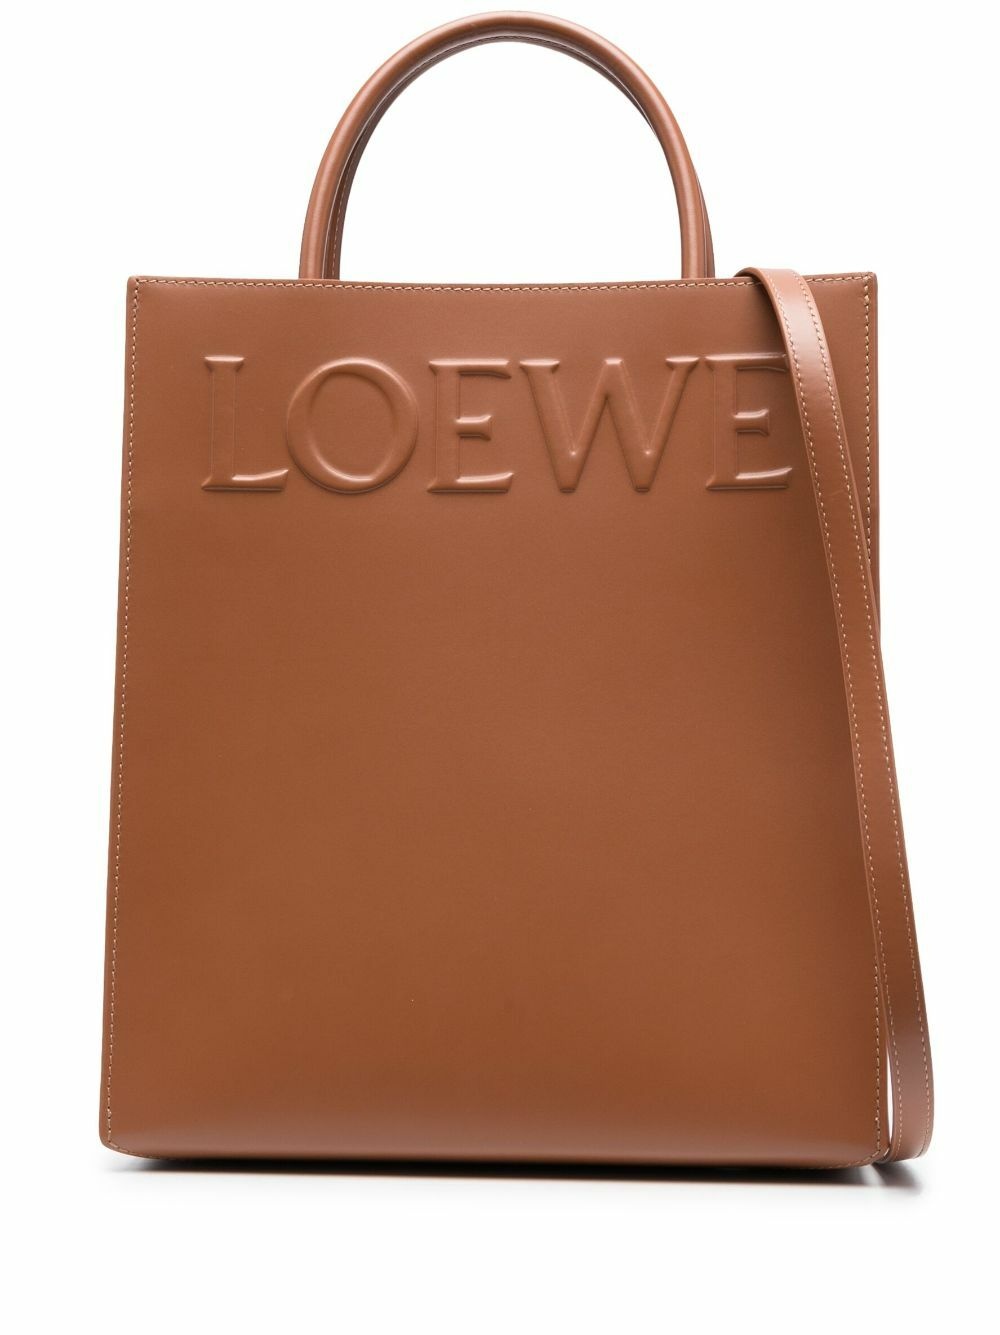 LOEWE - A4 Leather Tote Bag Loewe